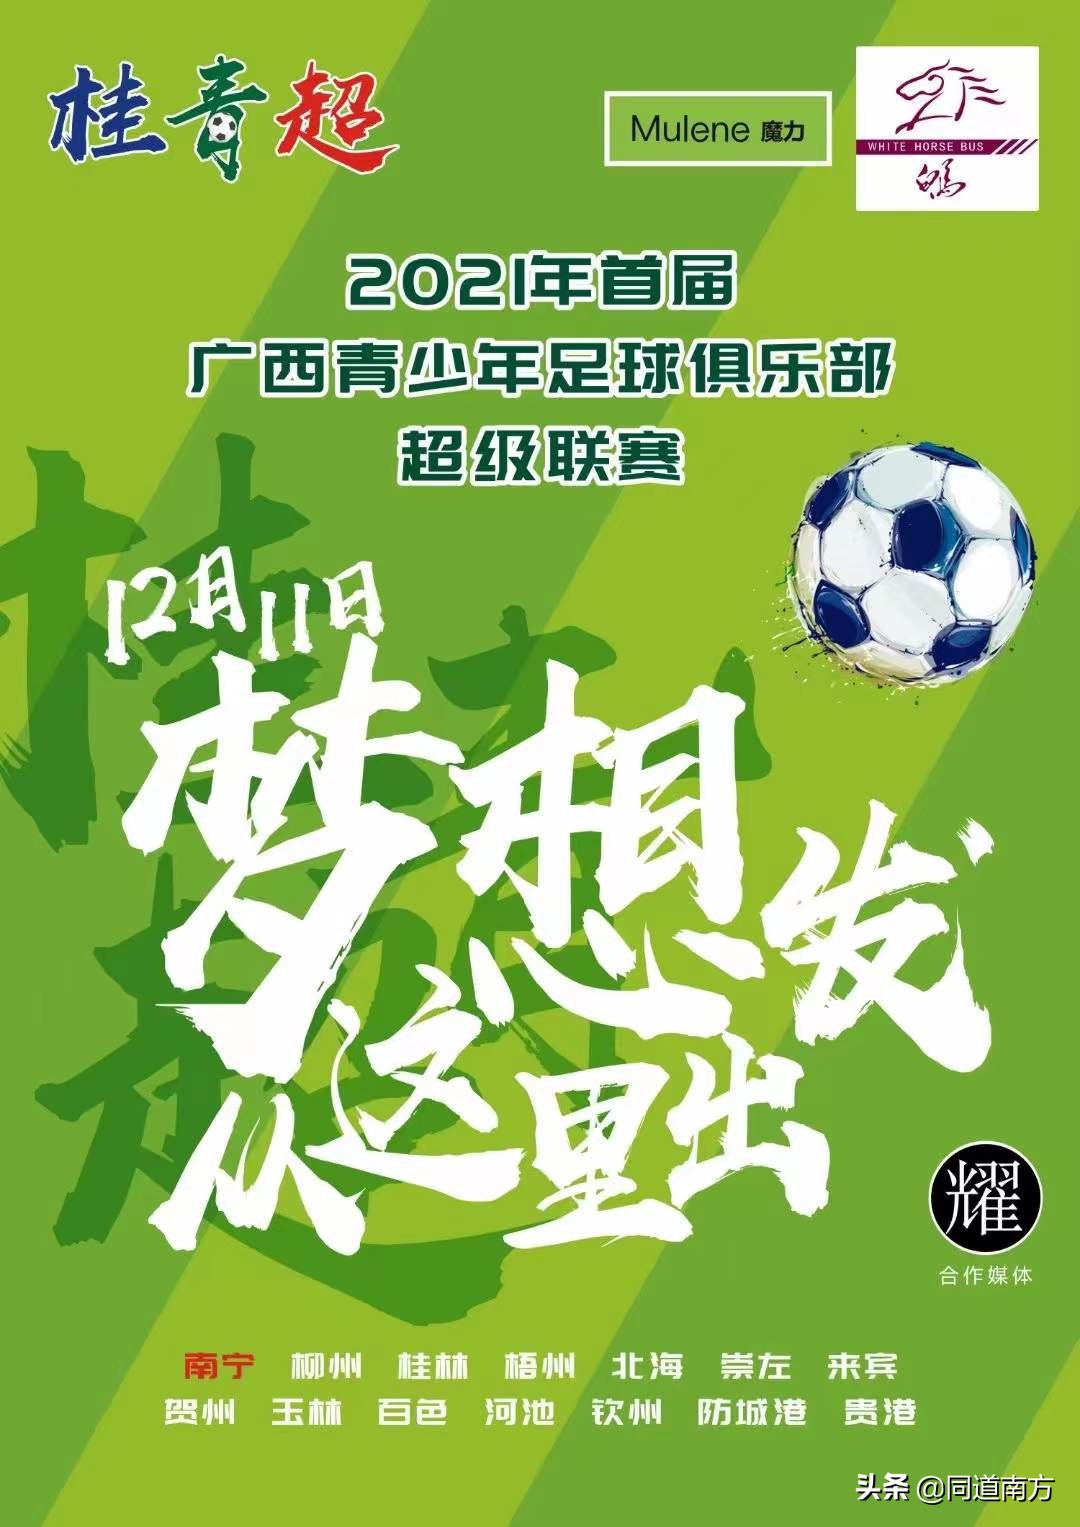 广西足球超级联赛(年终盘点：2021年锐意进取的广西足球，这24个事件值得永远铭记)